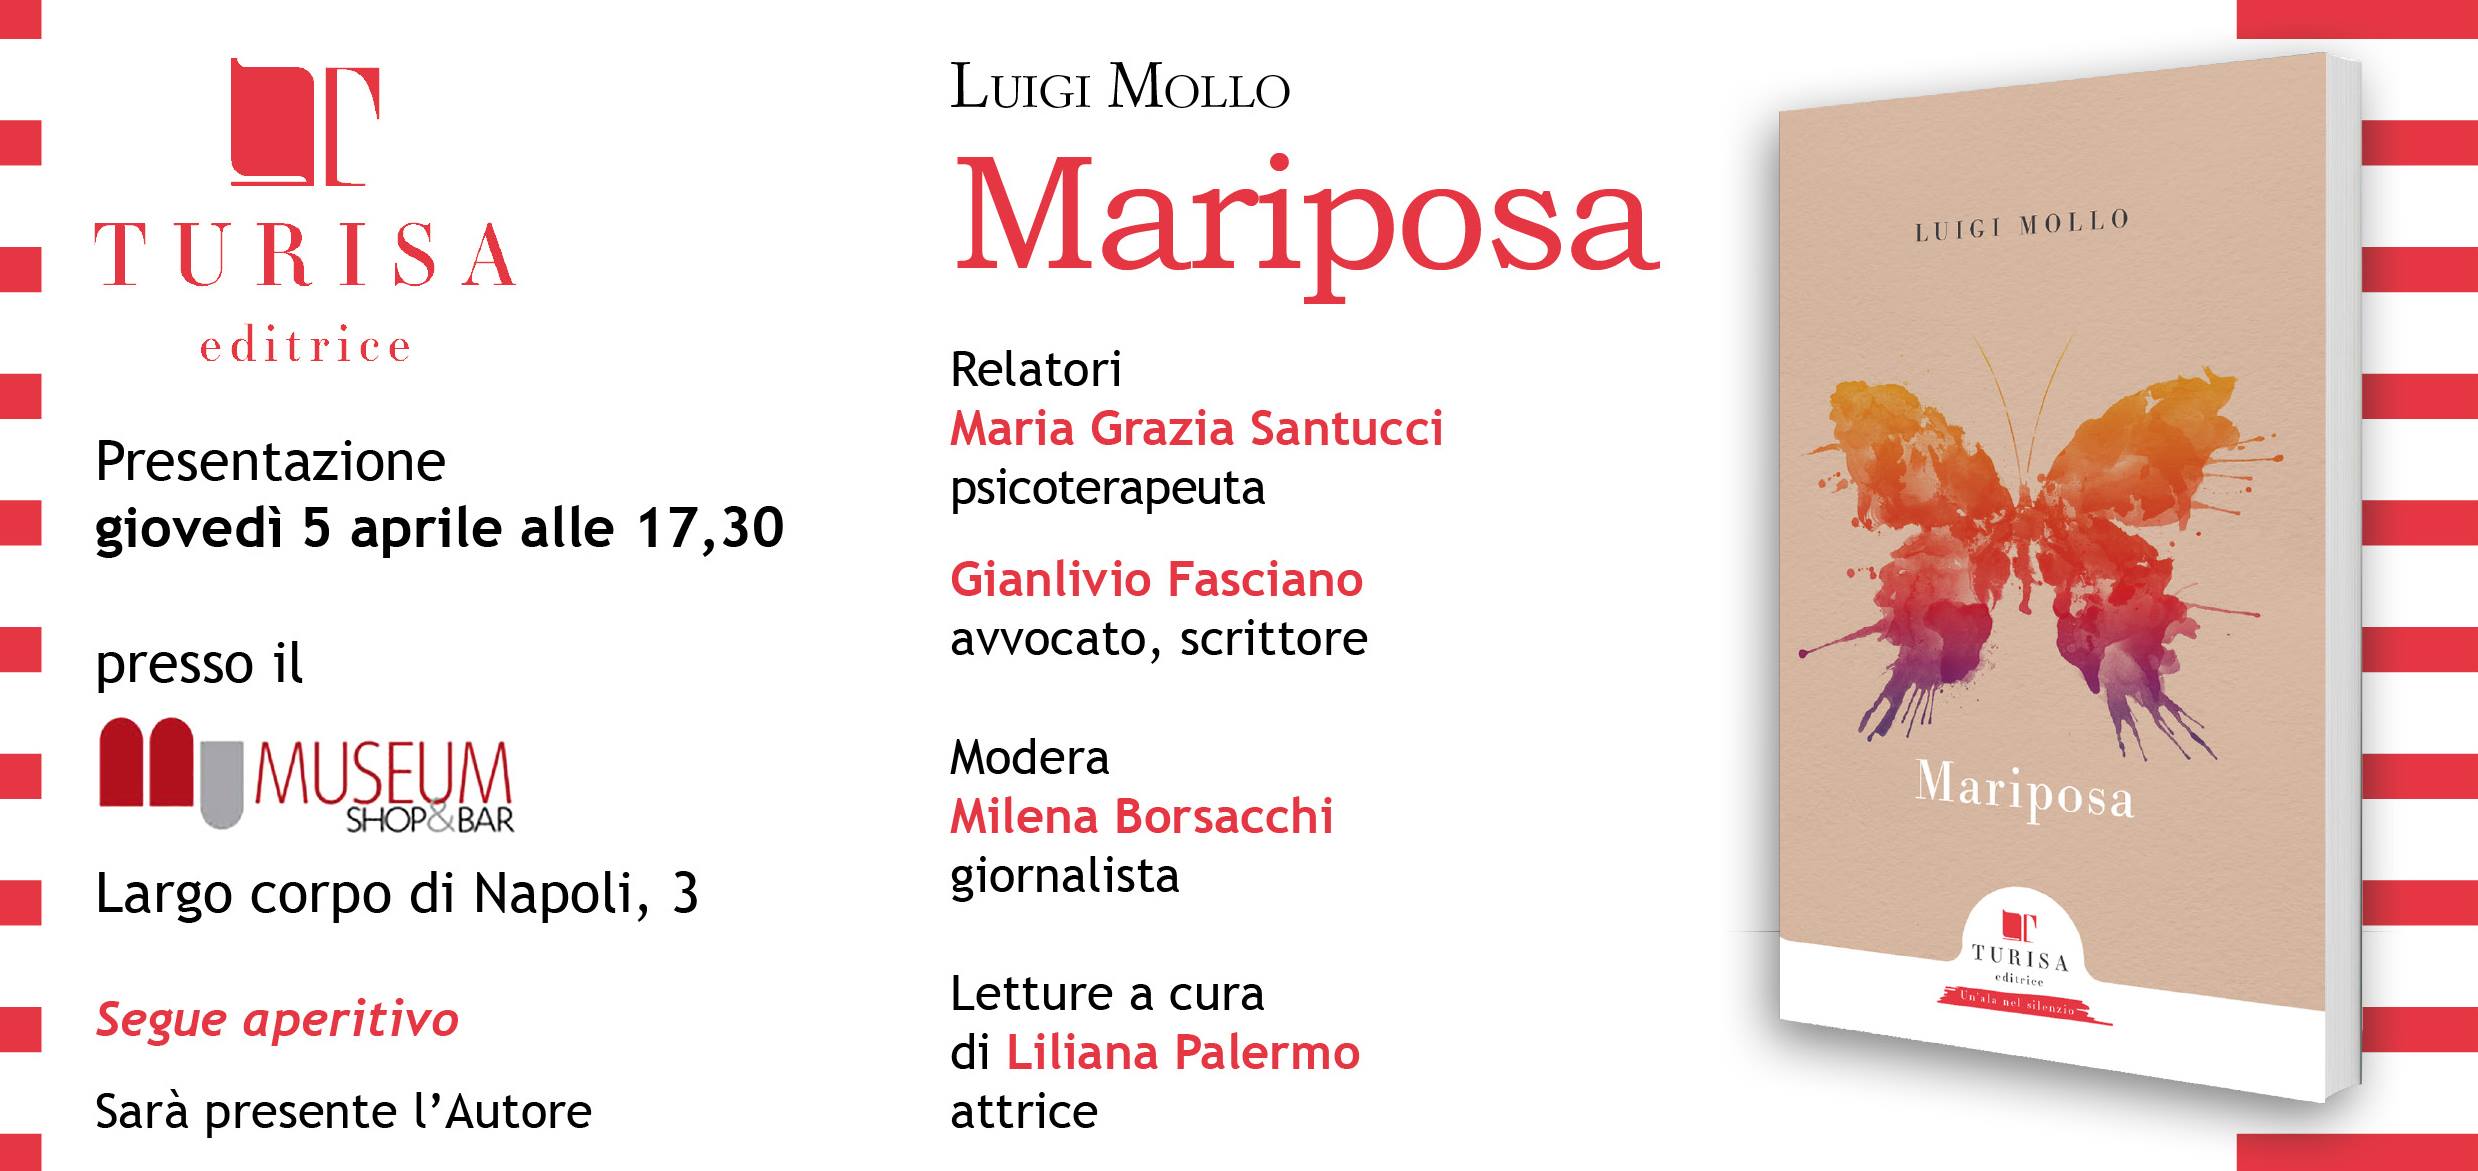 Mariposa, il profondo viaggio di Luigi Mollo in un libro edito da Turisa e presentato il 5 aprile a Napoli